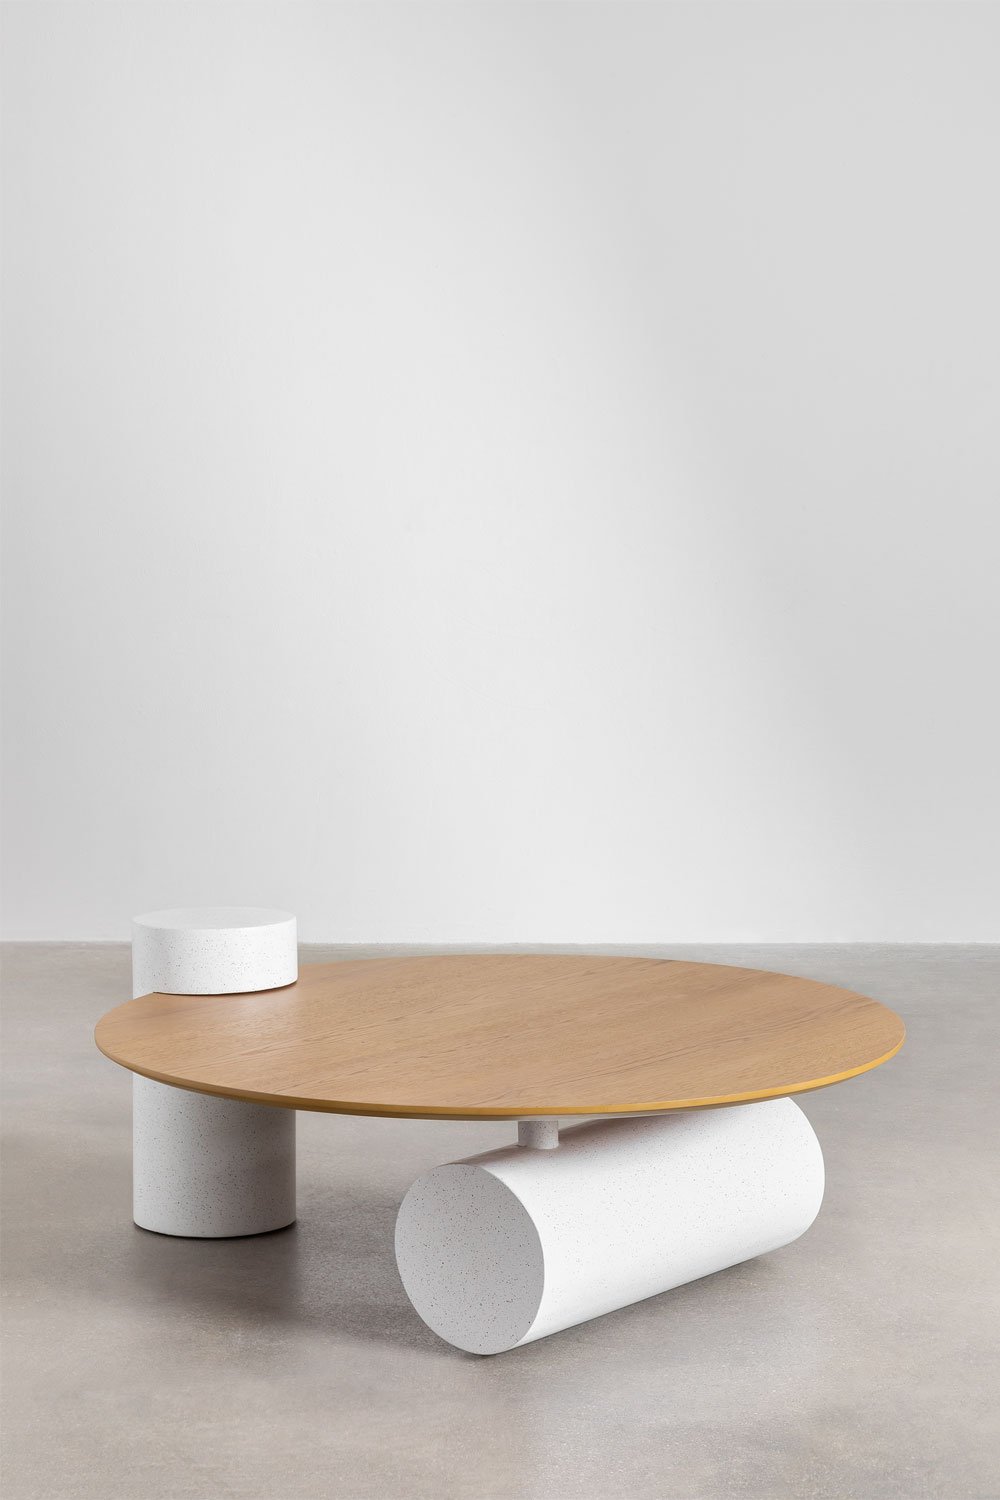  Tavolino rotondo in legno (Ø100 cm) Serenada, immagine della galleria 2